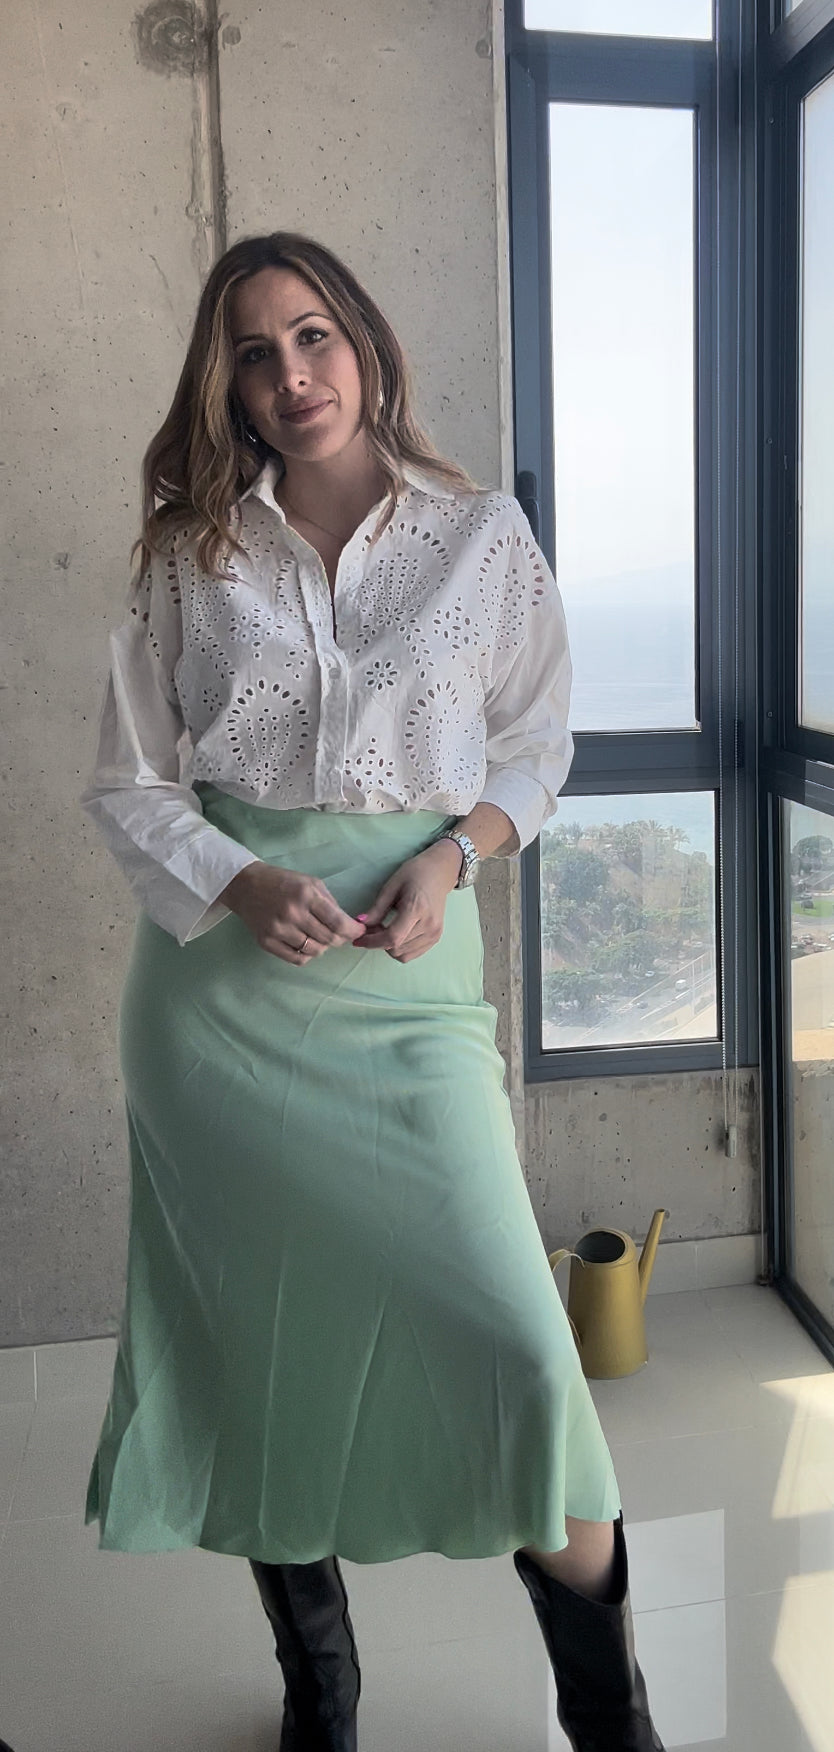 Falda satinada larga con elástico en cintura a 19,99€ disponible en cuatro colores